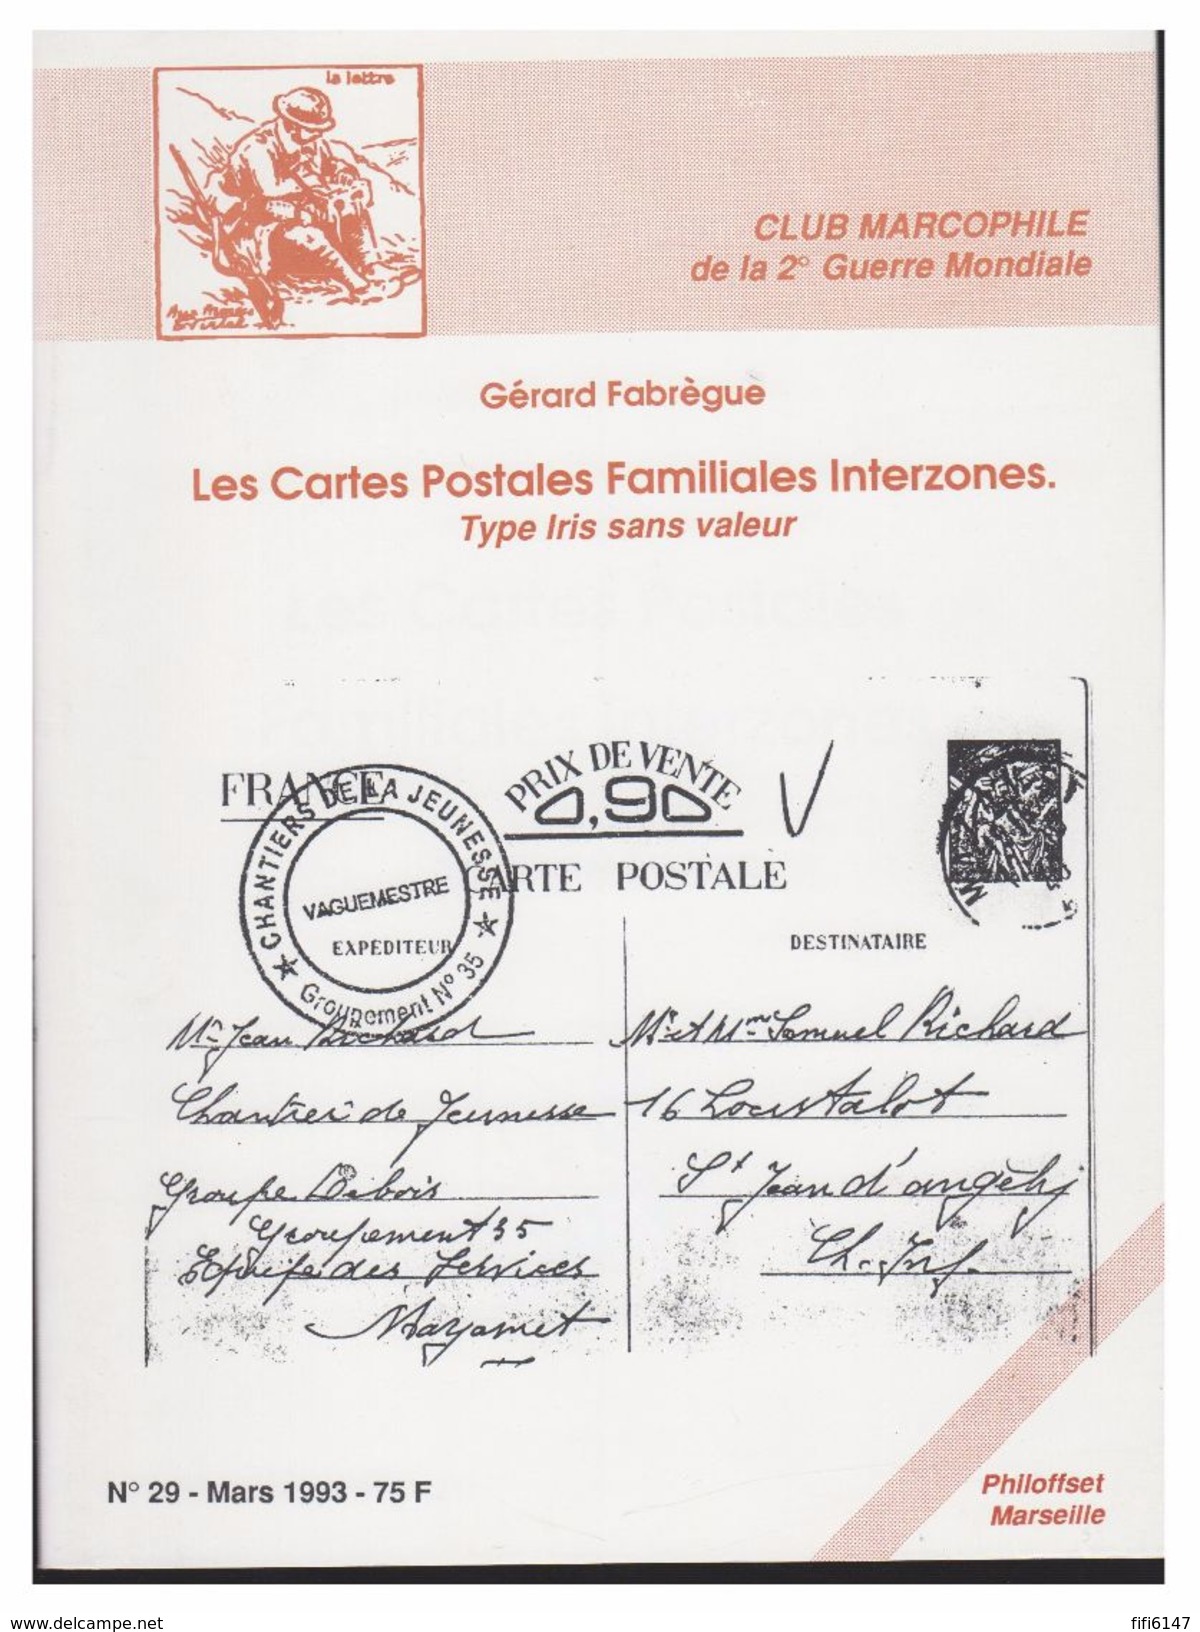 FRANCE -- SECONDE GUERRE MONDIALE -- GERARD FABREGUE -- LES CARTES POSTALES FAMILIALES INTERZONES -- 1993 - Philatelie Und Postgeschichte